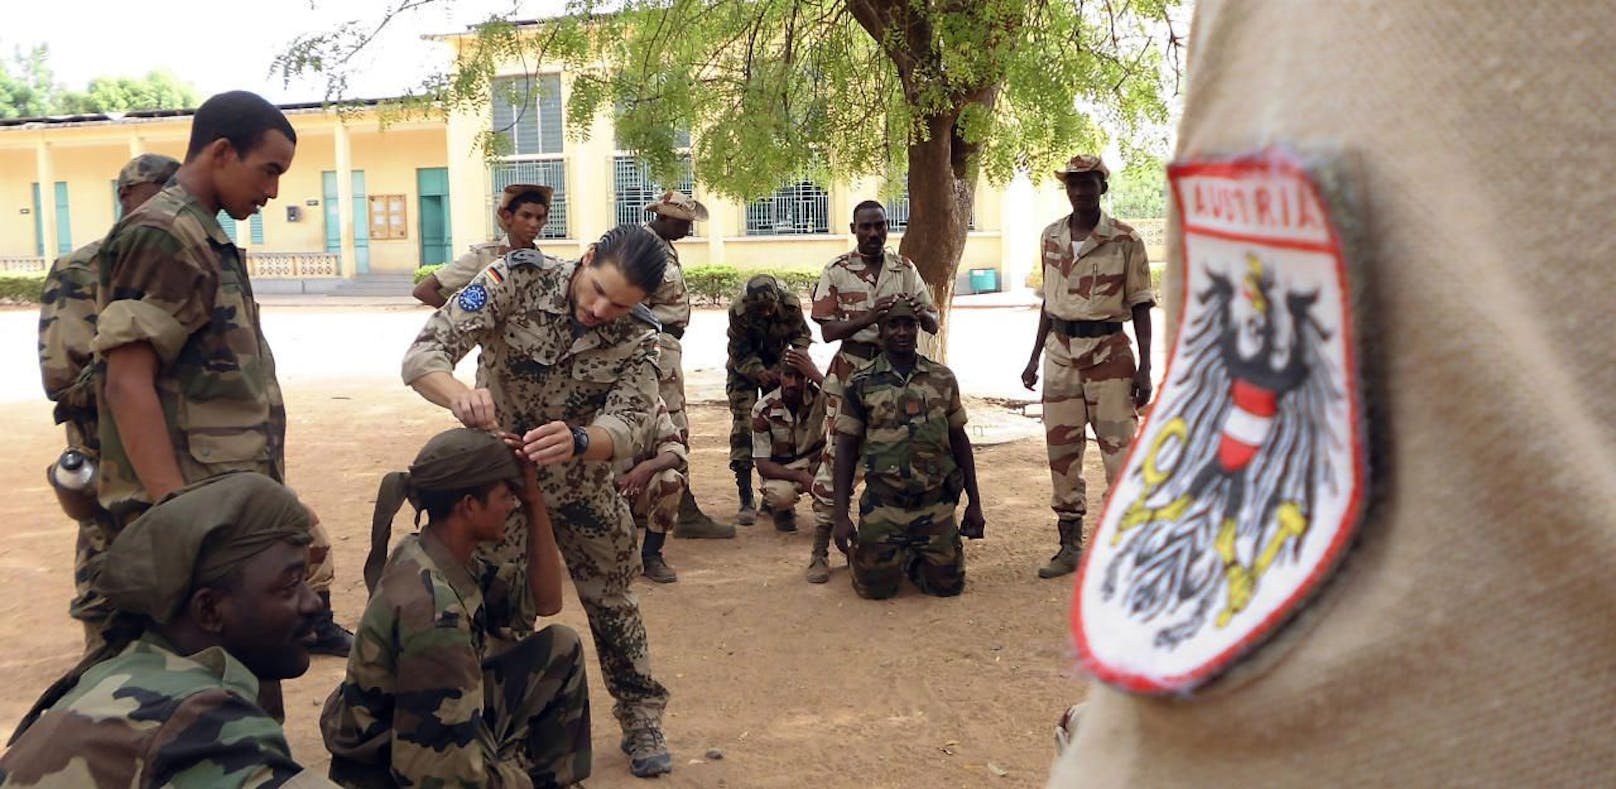 Lager des Bundesheeres in Mali angegriffen